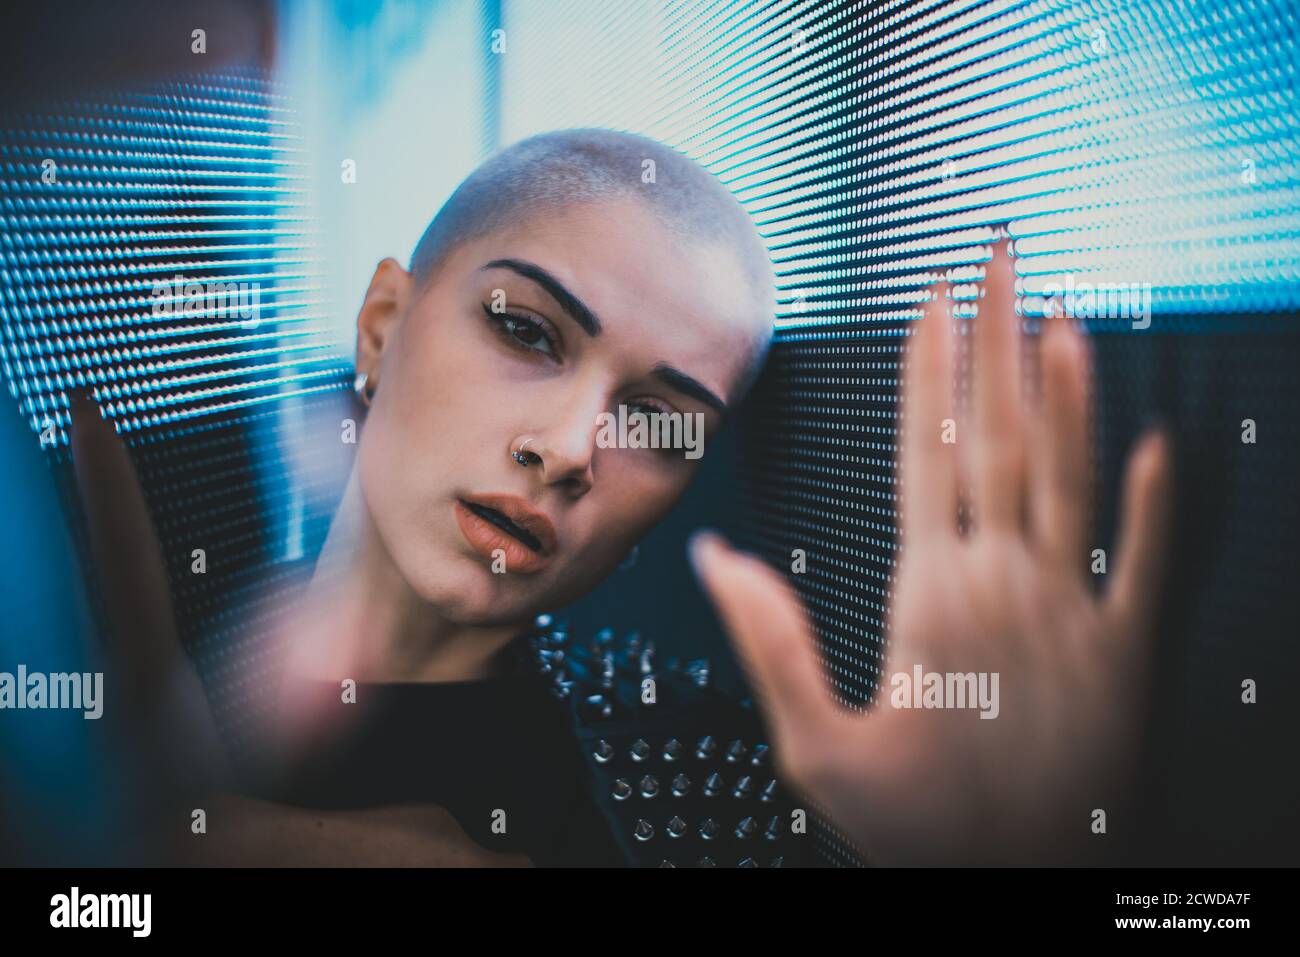 Image d'une belle jeune femme posant contre un panneau LED. Tête rasée à l'adolescence avec un aspect différent pour réaliser des portraits urbains Banque D'Images